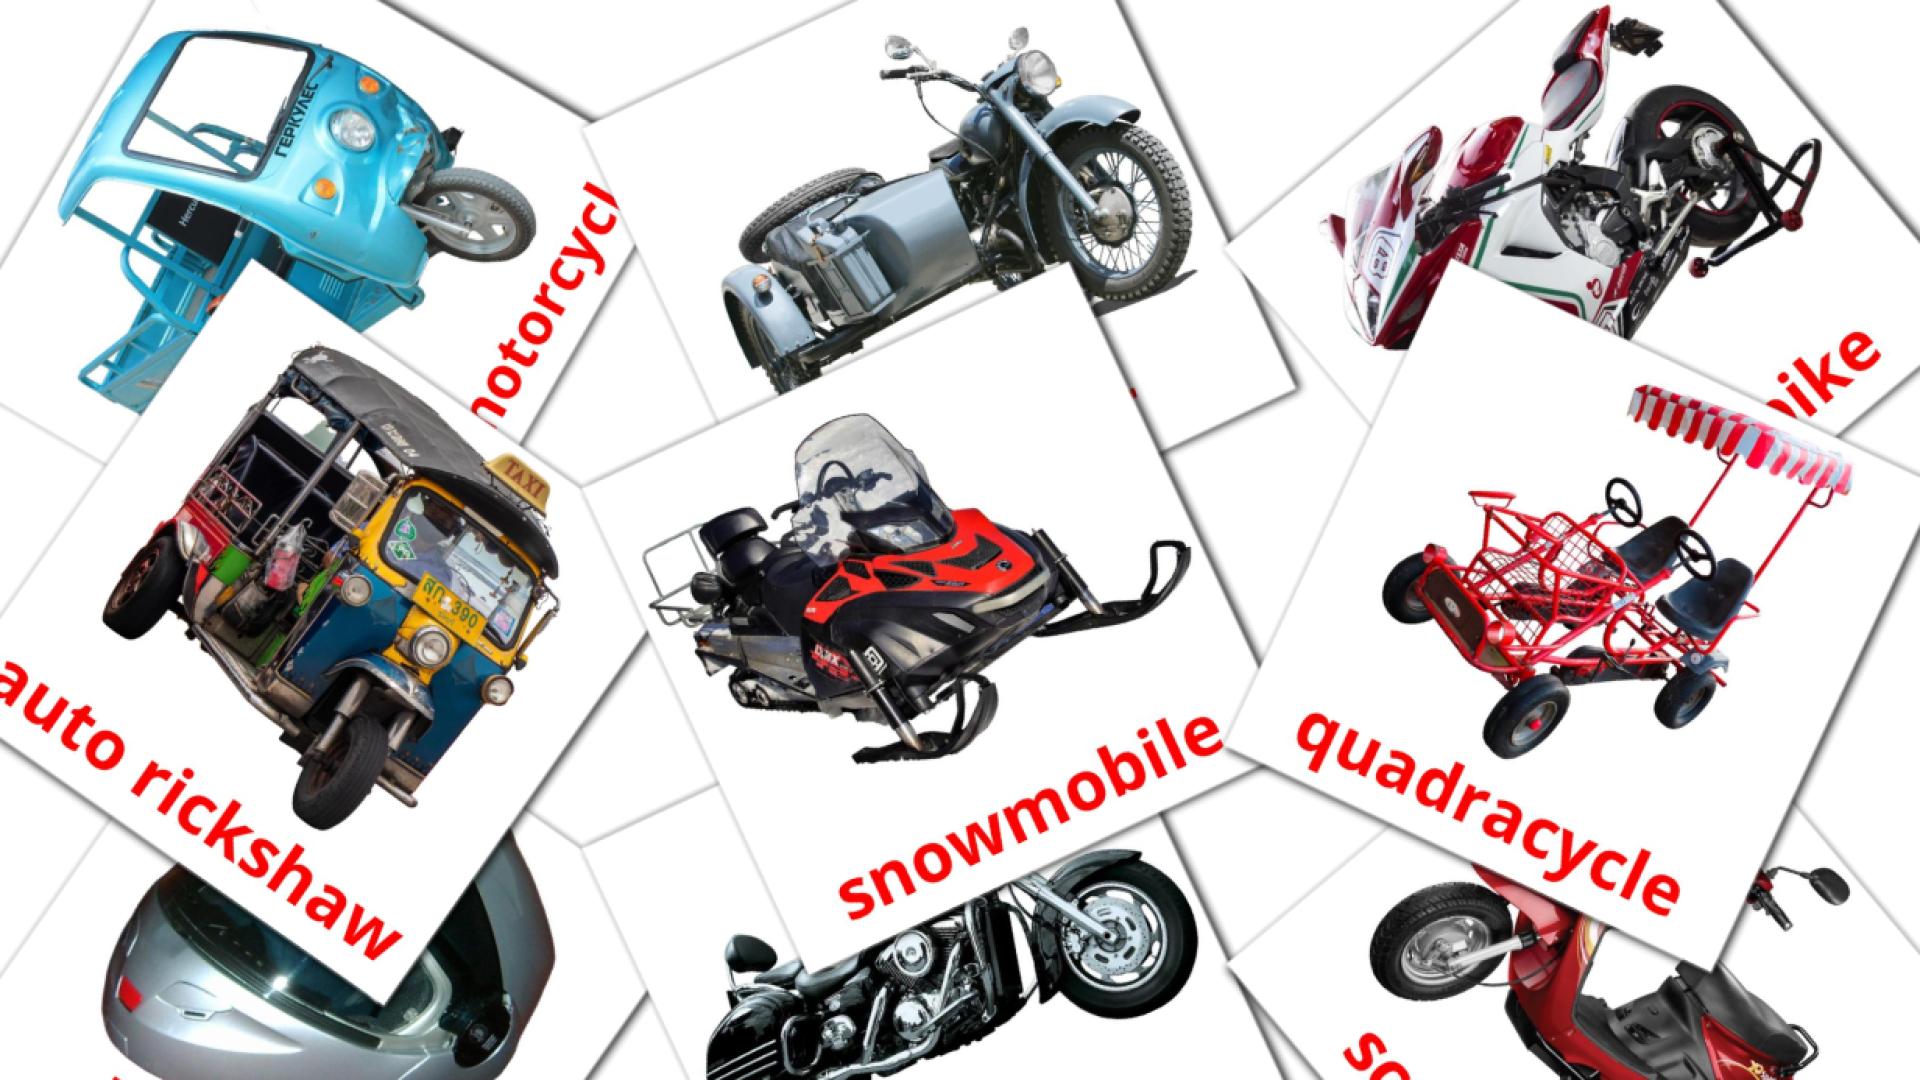 Bildkarten für Motorcycles